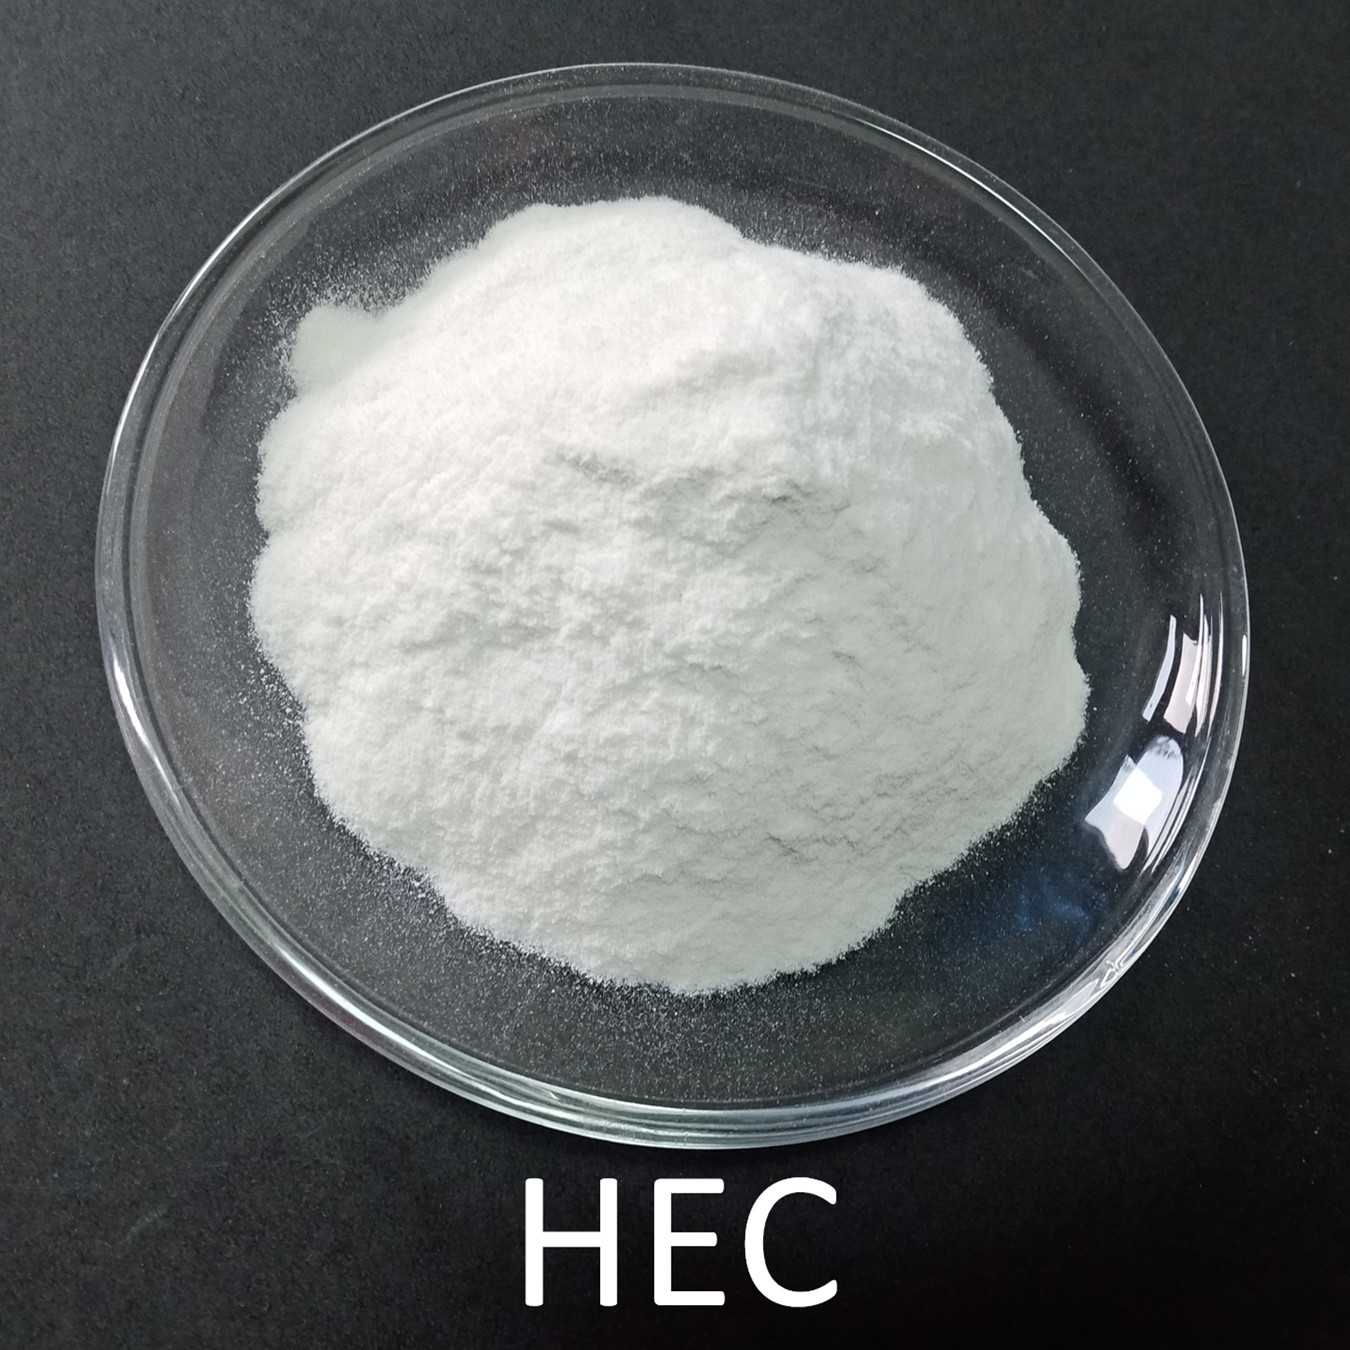 HECヒドロキシエチルセルロース 生産企業